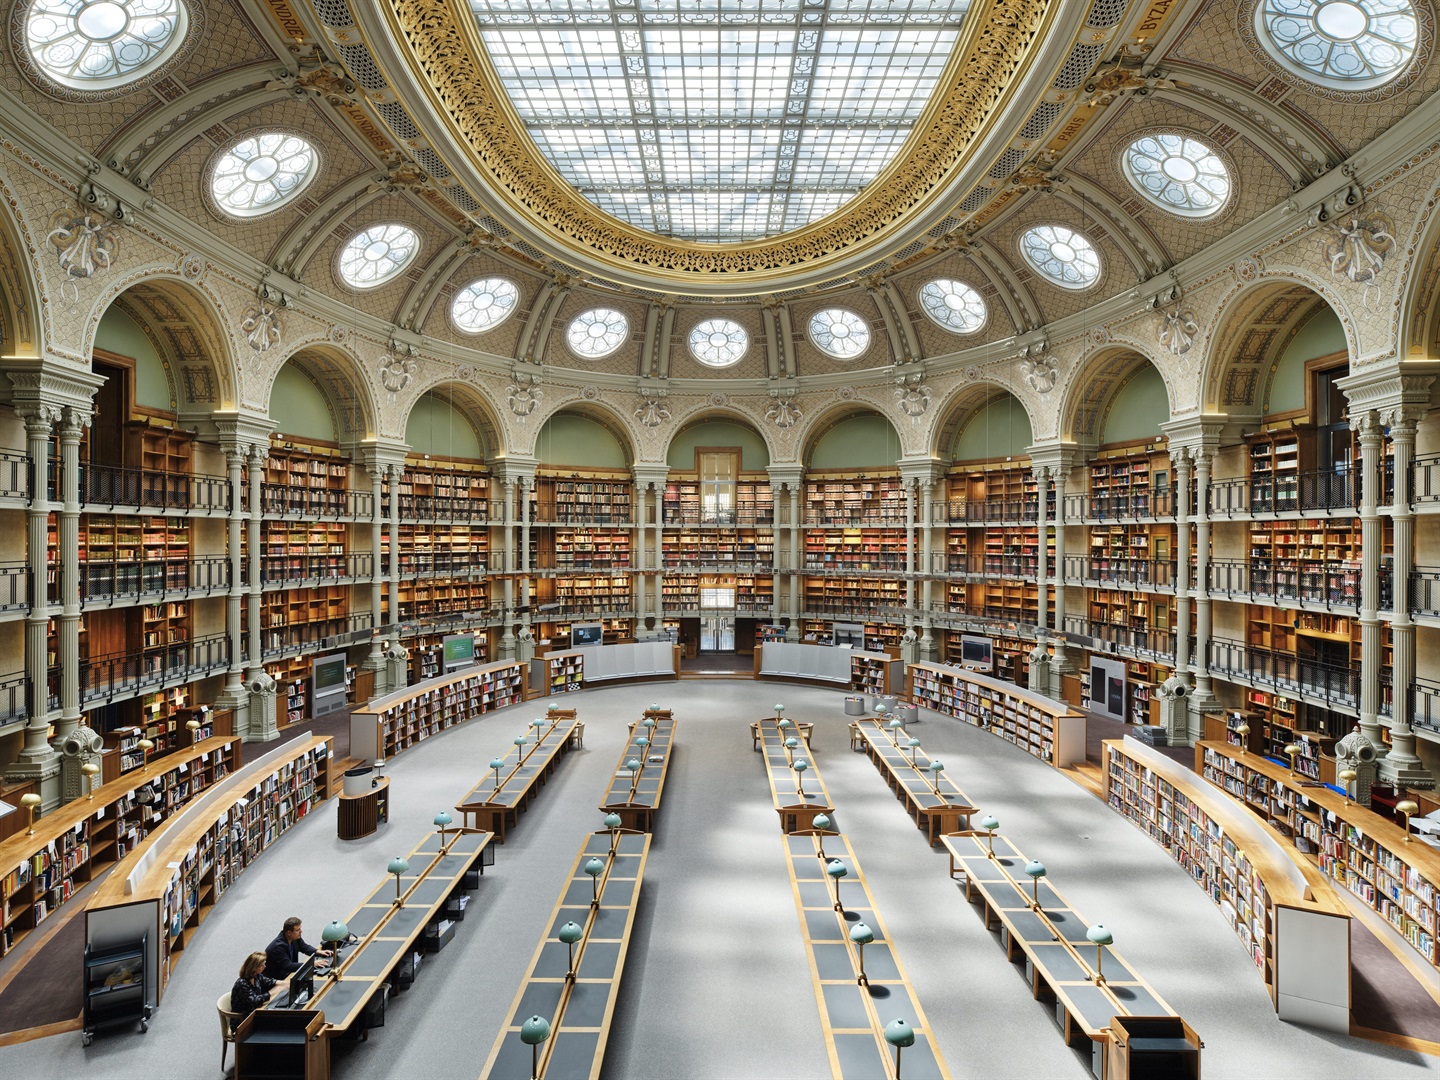 Jetez un oeil |  La Bibliothèque nationale de France, paradis des bibliophiles, a rouvert après 12 ans de restauration